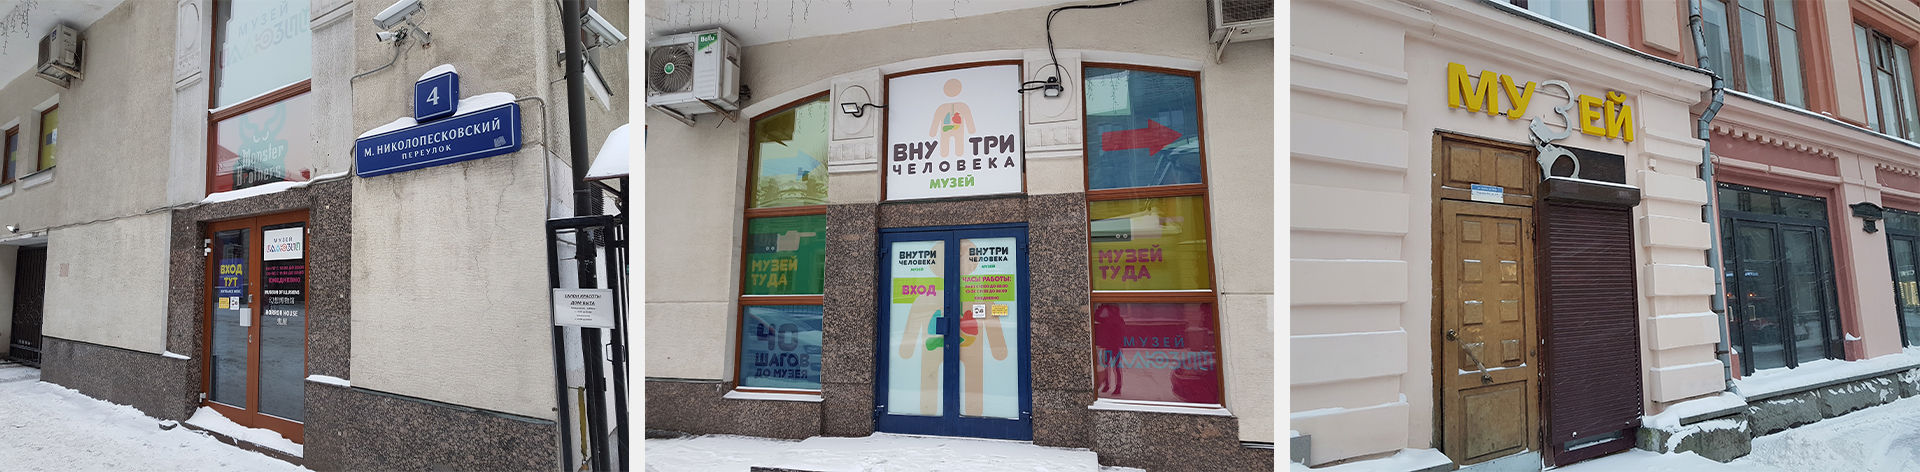 Еще один дом с развлечениями от компании BigCreative расположен на улице Малый Николопесковский переулок, 4 (около Арбата).